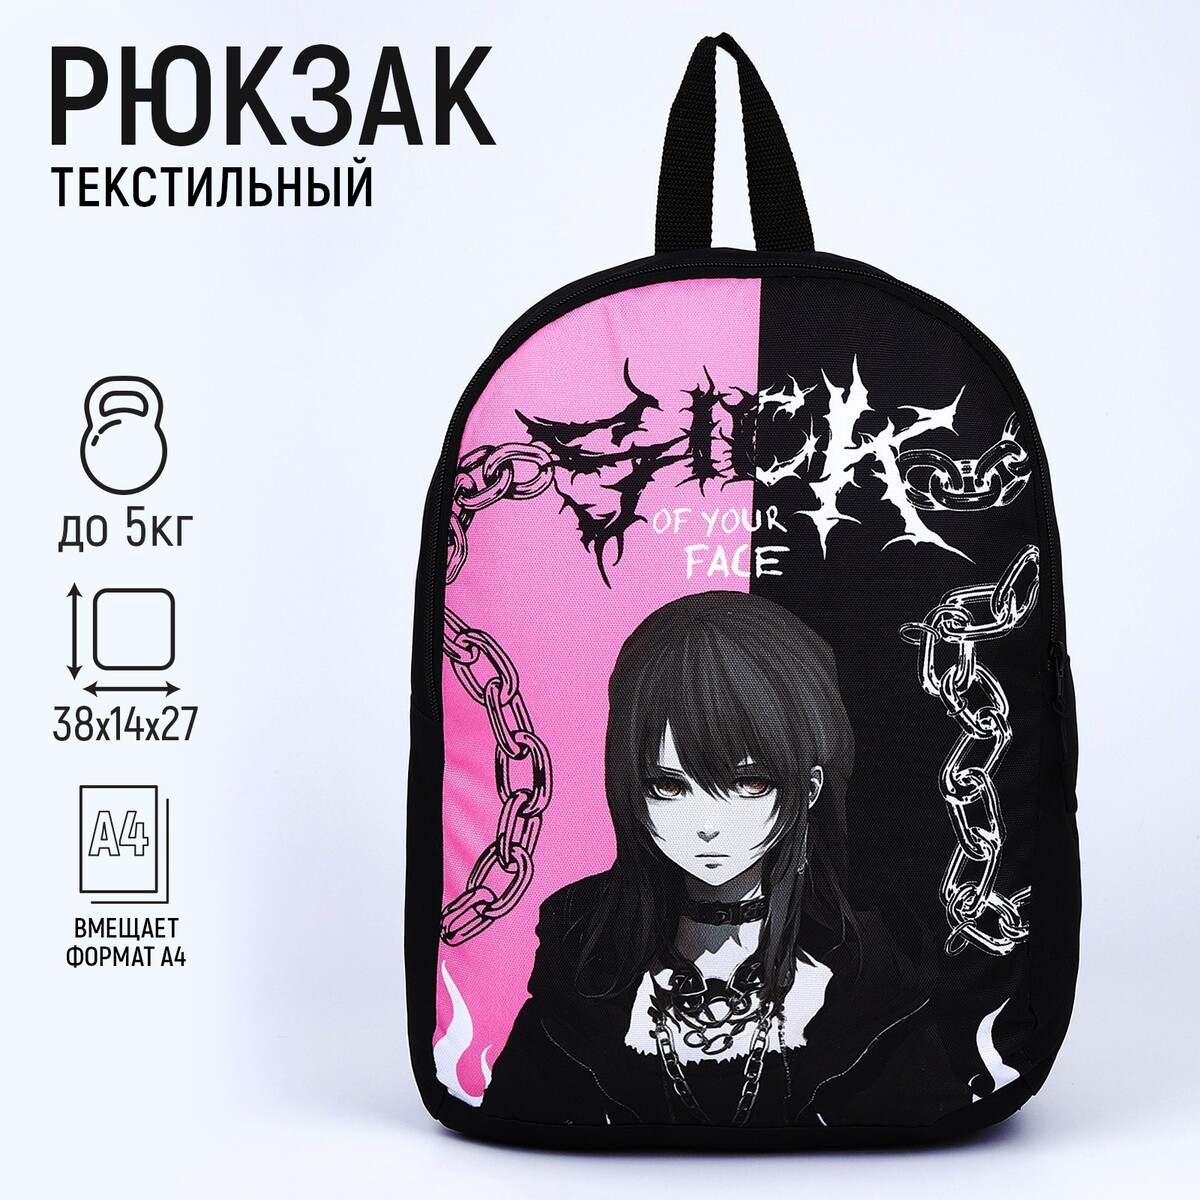 Рюкзак текстильный аниме, 38х14х27 см, цвет черный, розовый рюкзак текстильный утка 38х14х27 см